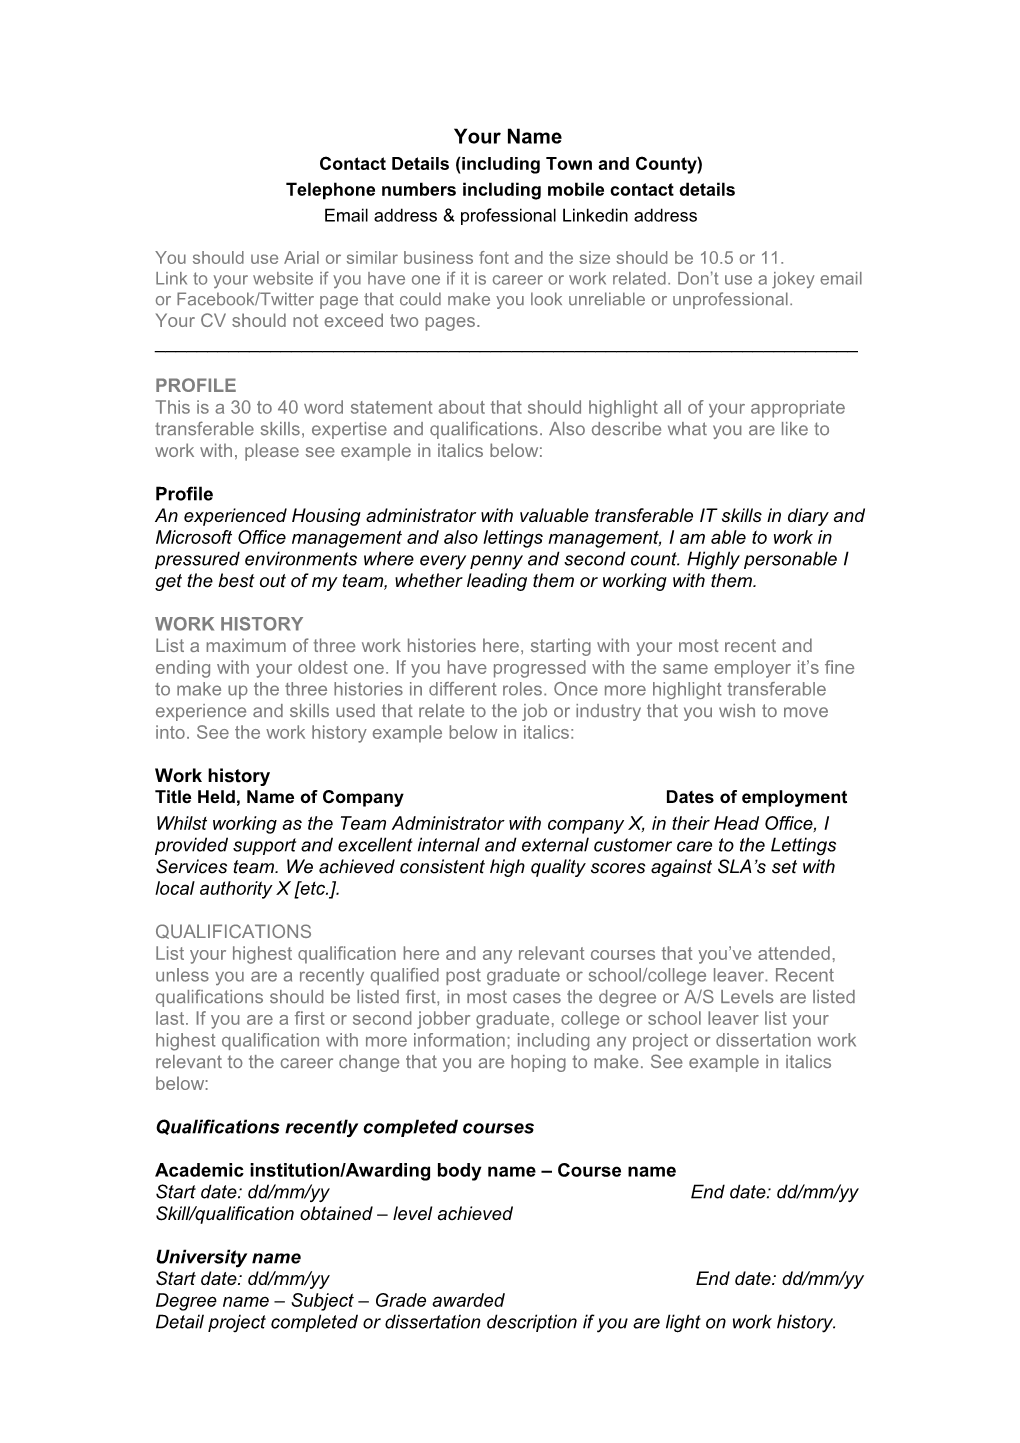 Career Changer CV Guardian Jobs CV Template